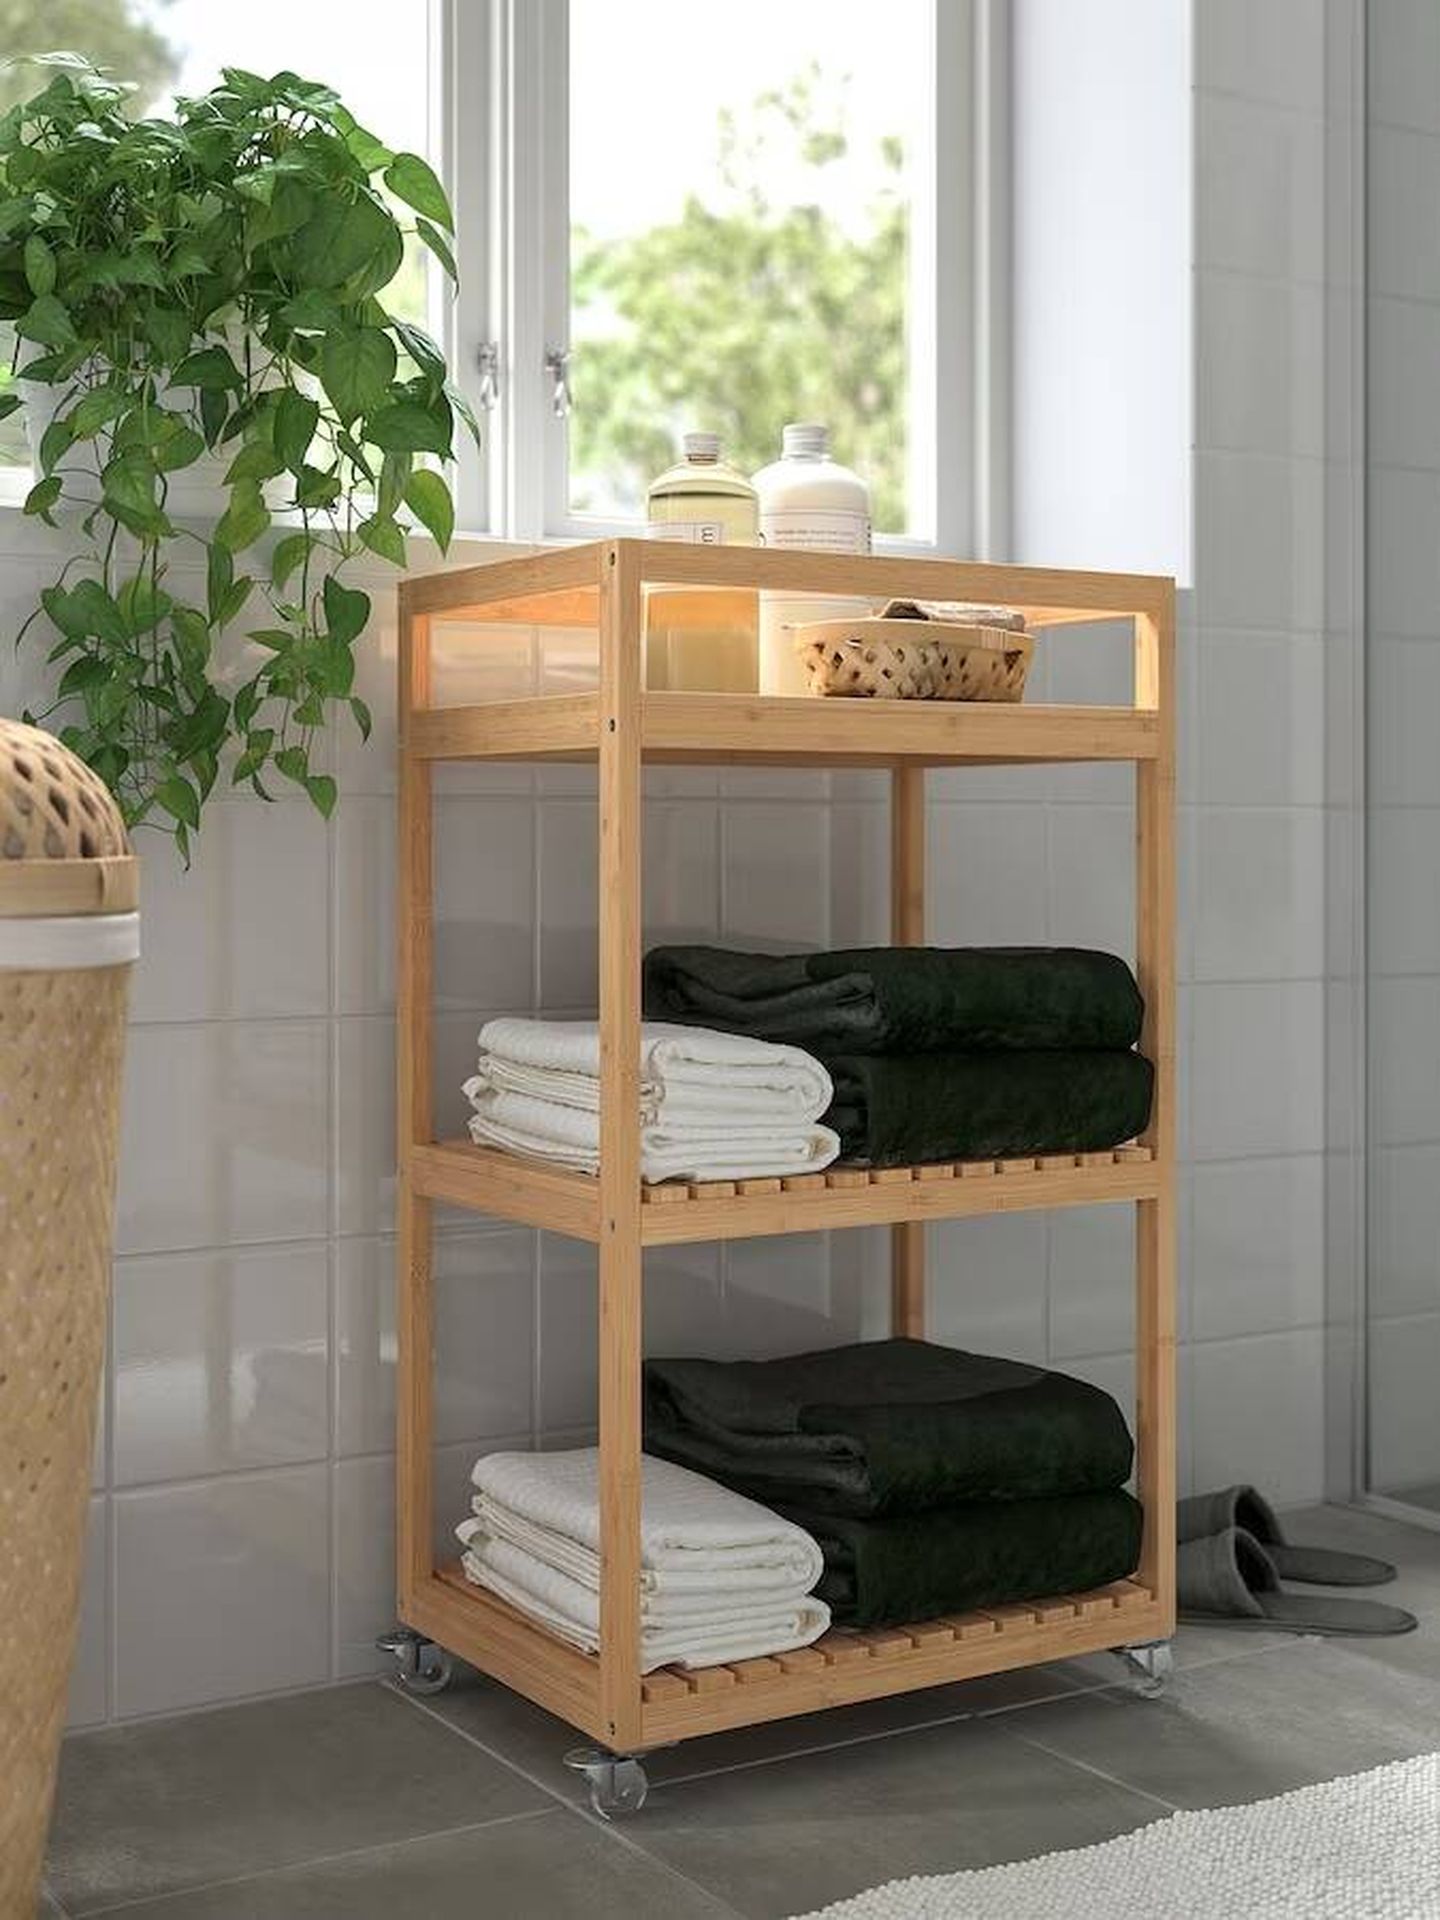 Carrito de bambú para organizar las toallas y otros productos de baño.